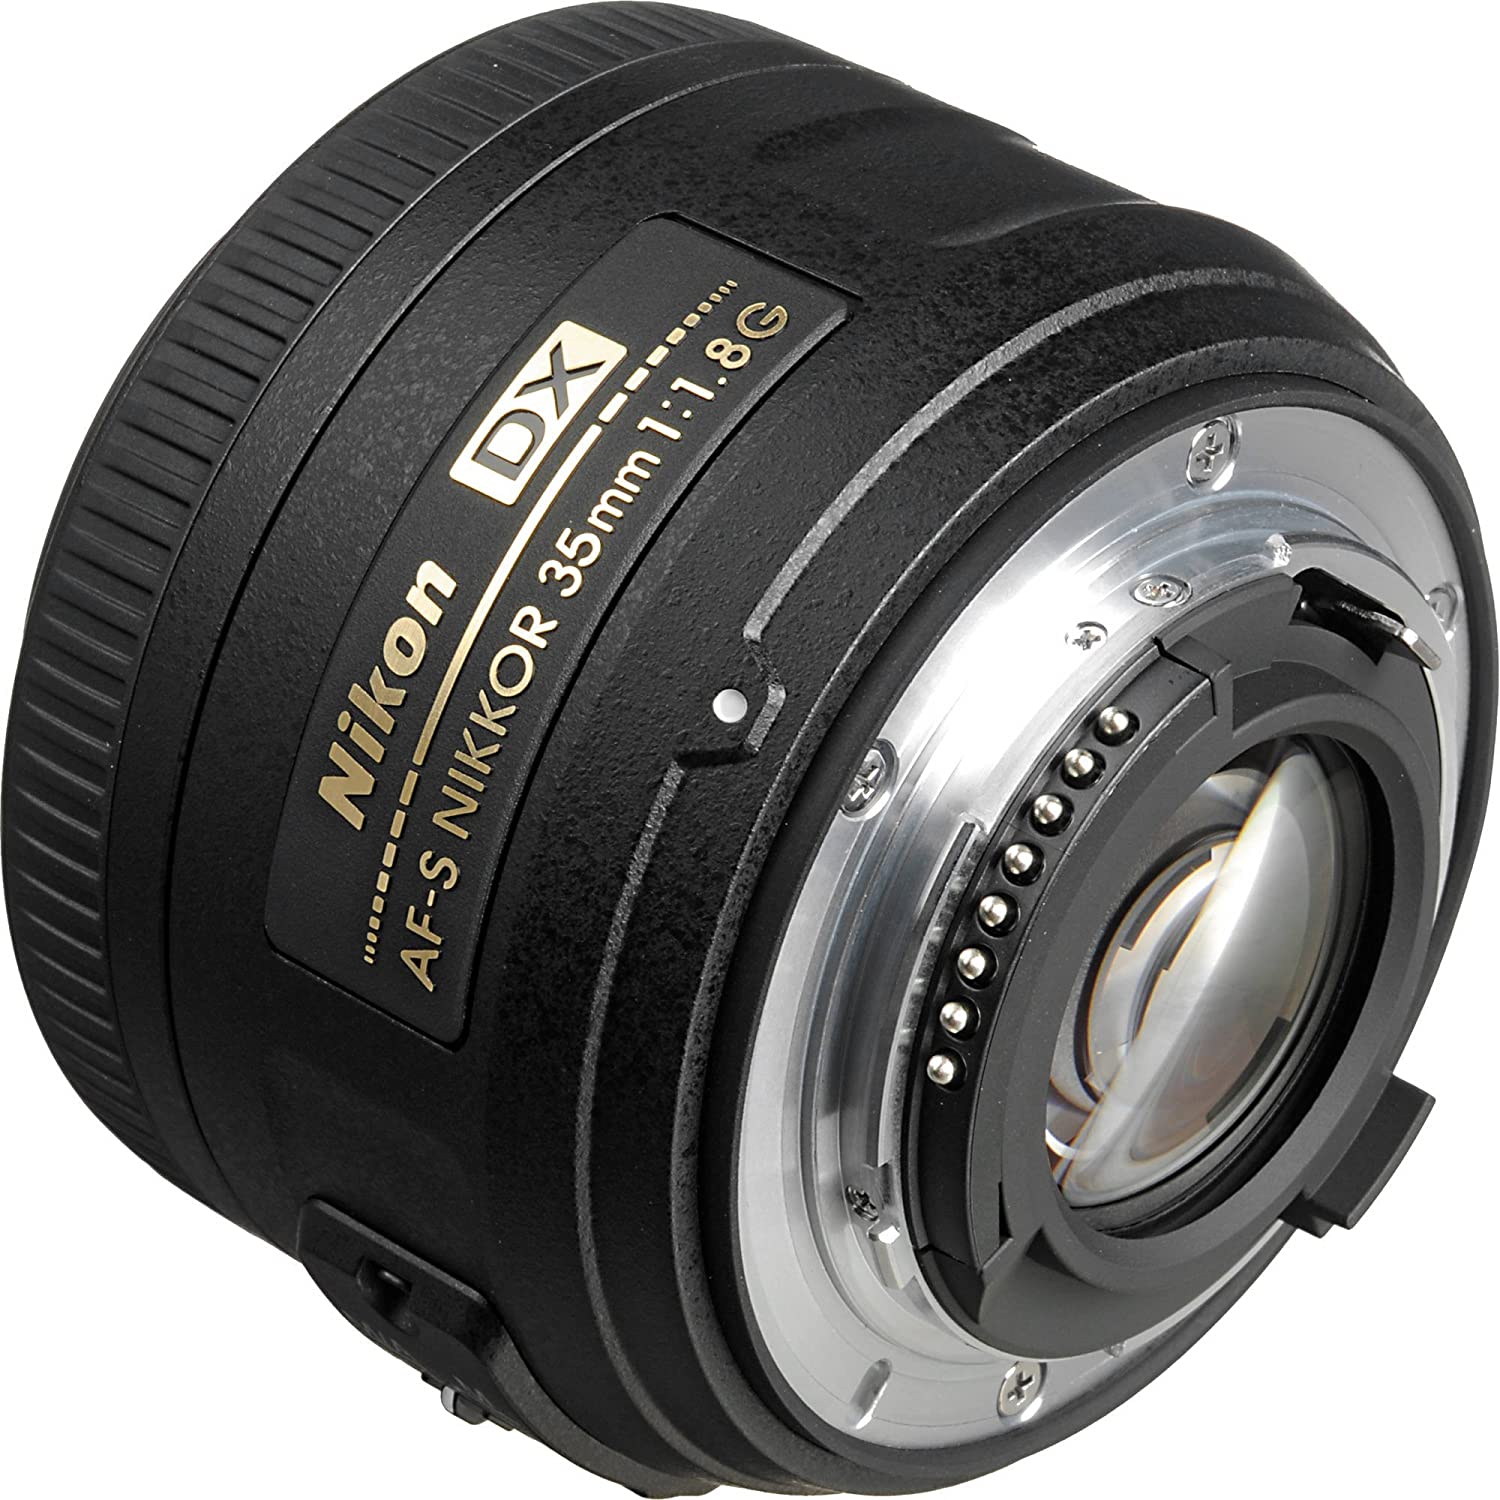 Nikon AF-S 35mm F1.8G DX Lens, Black